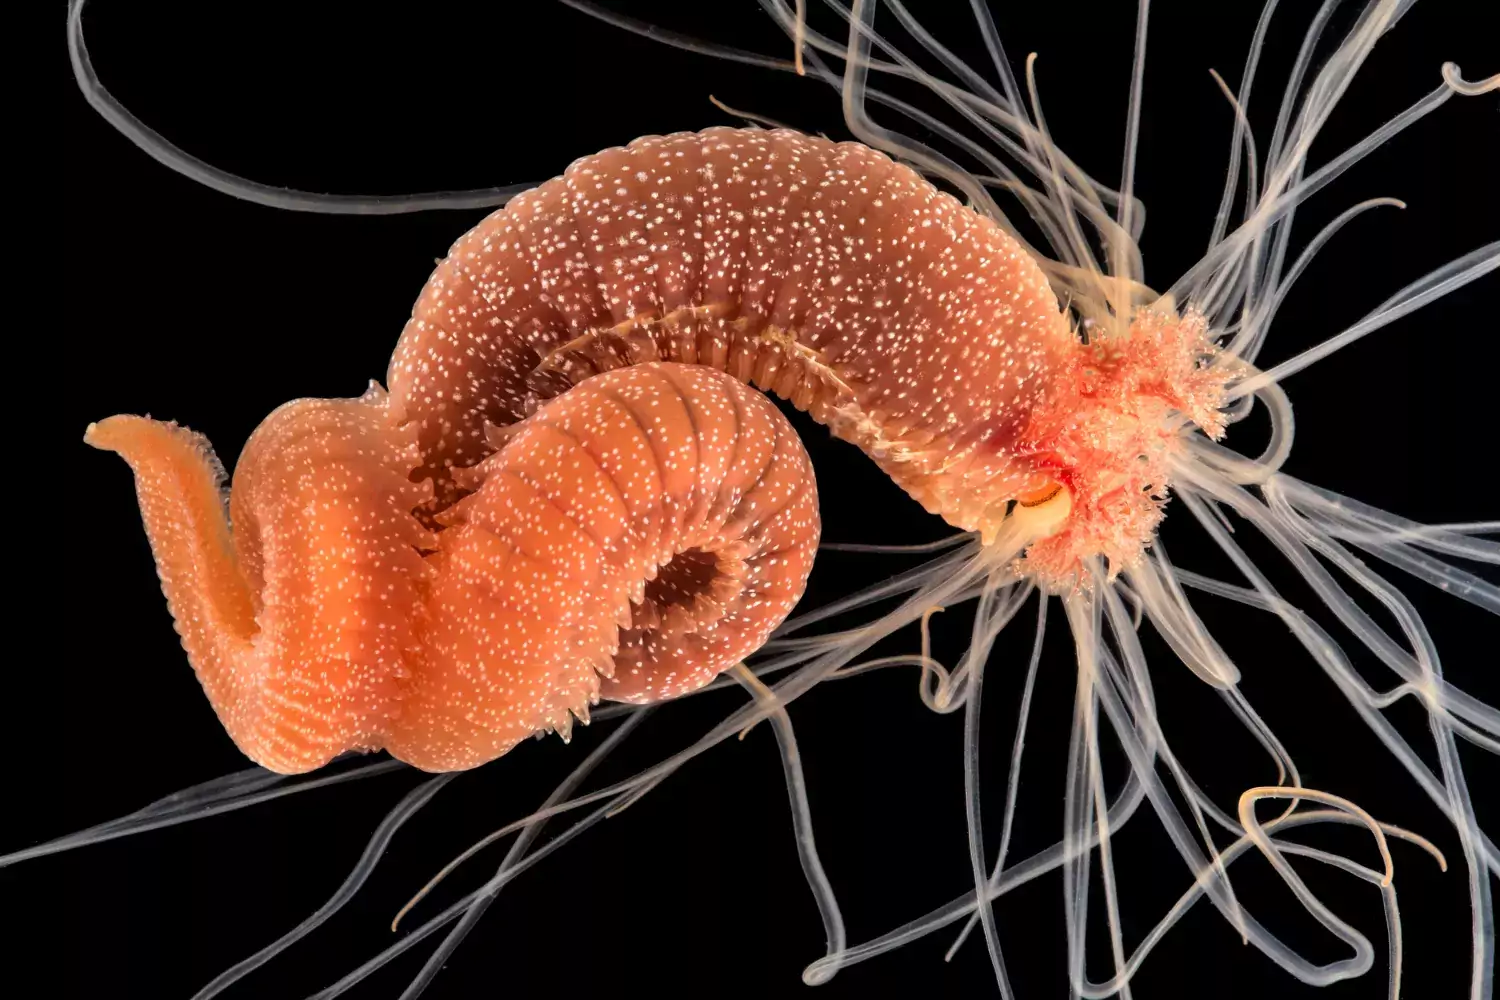 Eupolymnia nebulosa (svenskt namn saknas) är en rörbyggande havsborstmask och hör till gruppen spagettimaskar med syfte på tentakelkronan de har i framänden. Djuret på bilden är cirka 3 centimeter långt och har tagits ut ur sitt rör.